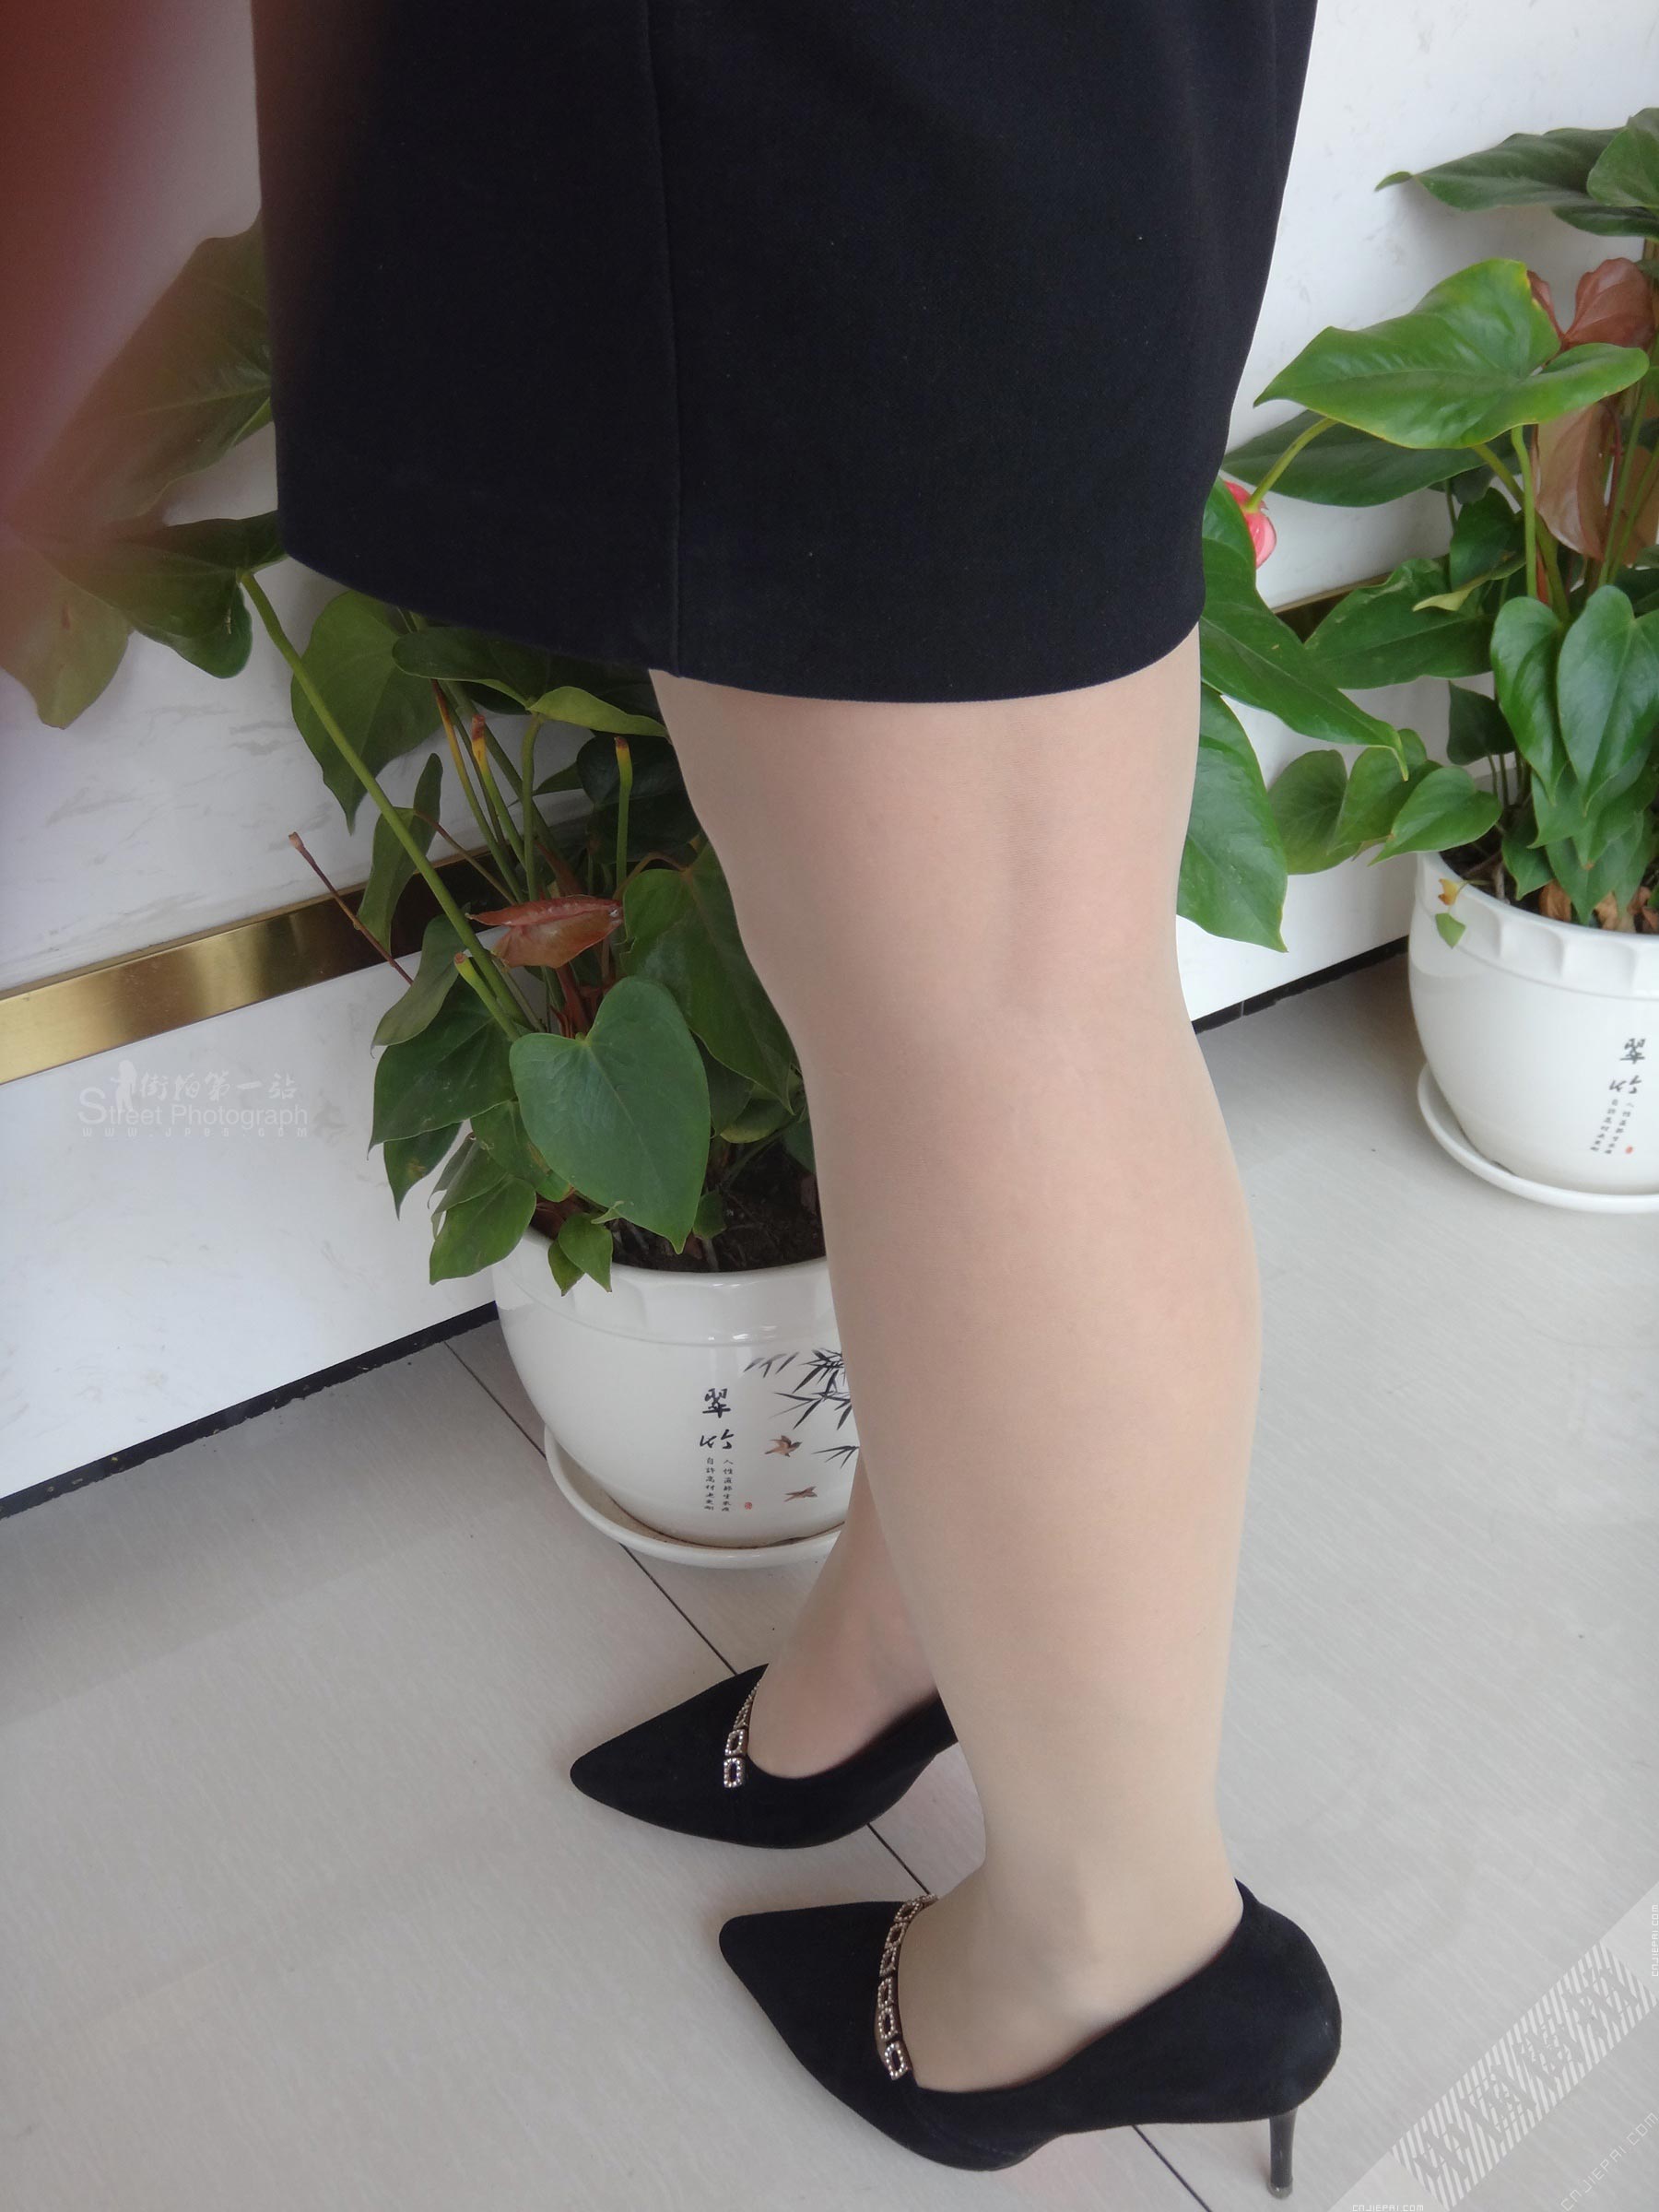 短裙制服美女业务的黑丝高跟美腿 图3